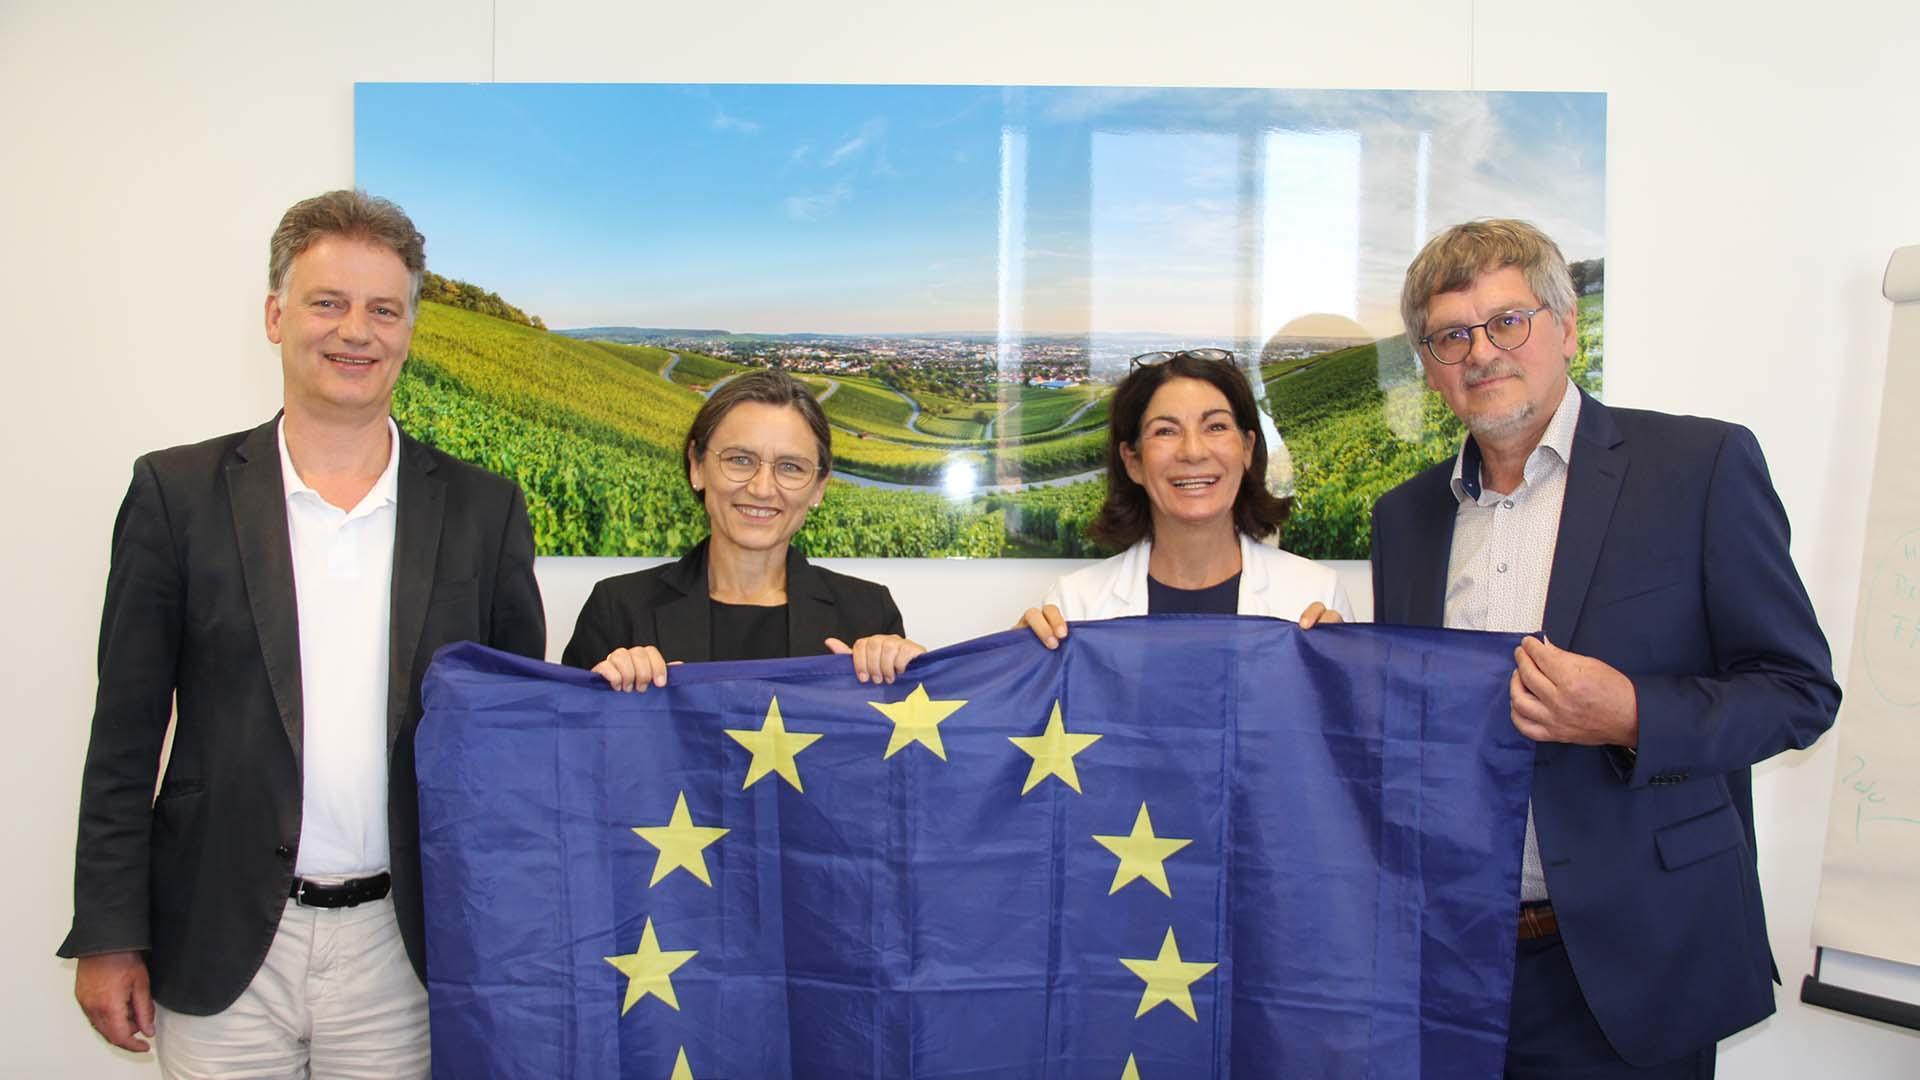 Auf dem Bild stehen vier Personen nebeneinander und halten dabei eine Europaflagge. Von links nach rechts: Prof. Dr. Thomás Bayón, Prof. Dr. Martina Klärle, Prof. Dr. Nicole Graf und Raimund Hudak.